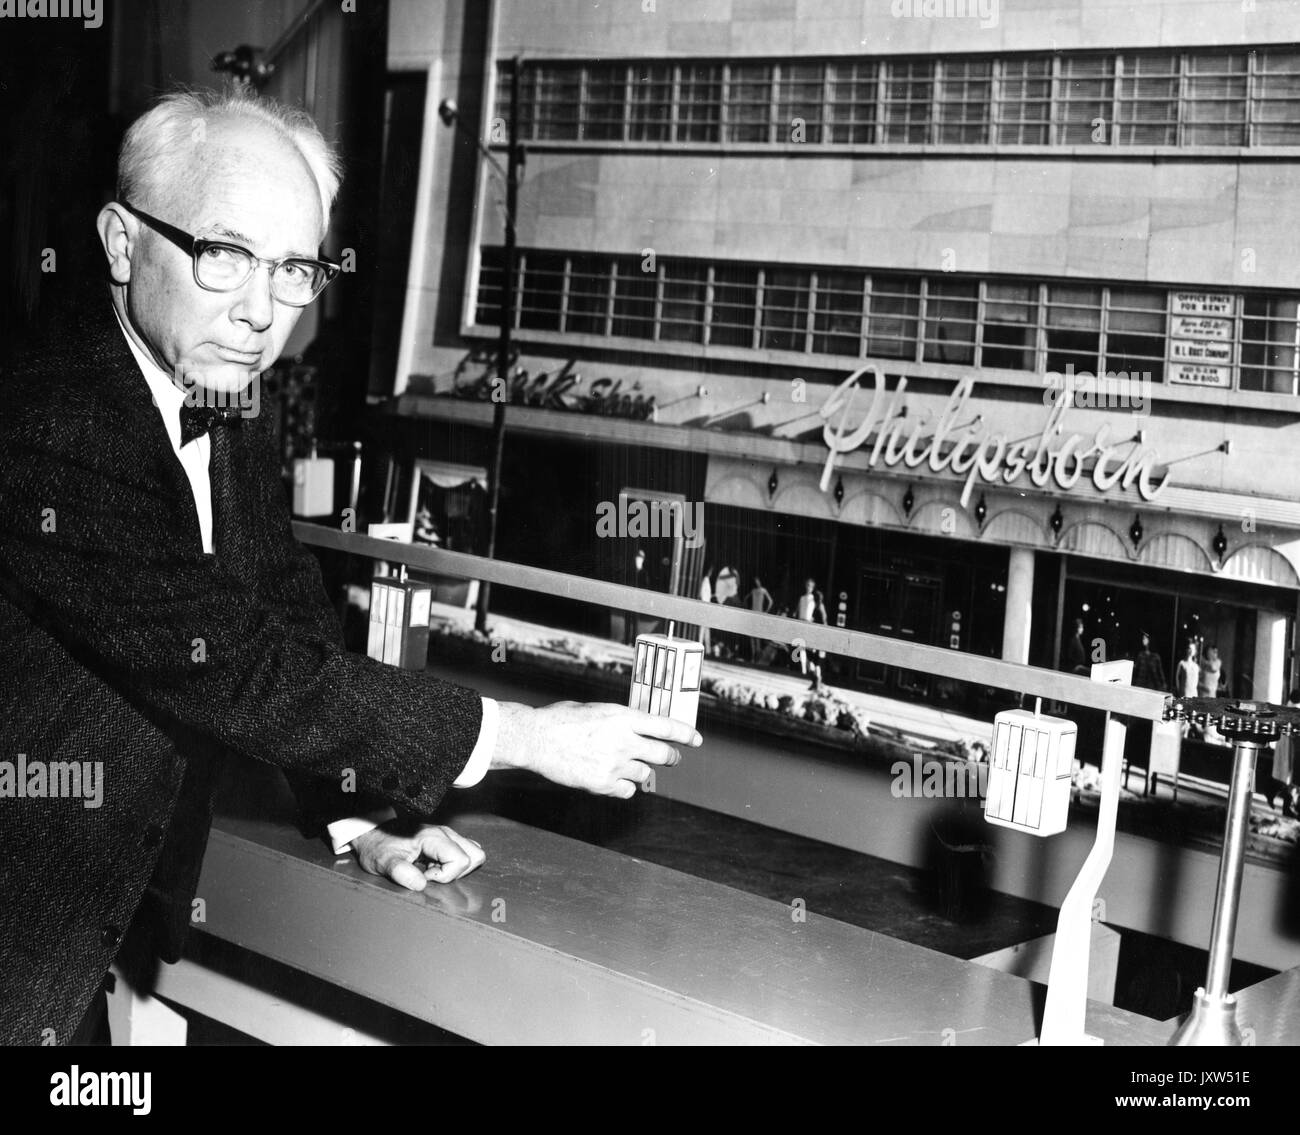 William Avery hinkley, laboratoire de physique appliquée photographie candide, assis, jusqu'à la taille, de face, la démonstration du système de transport de voiture aérienne, c 70 ans d'âge, 1960. Banque D'Images